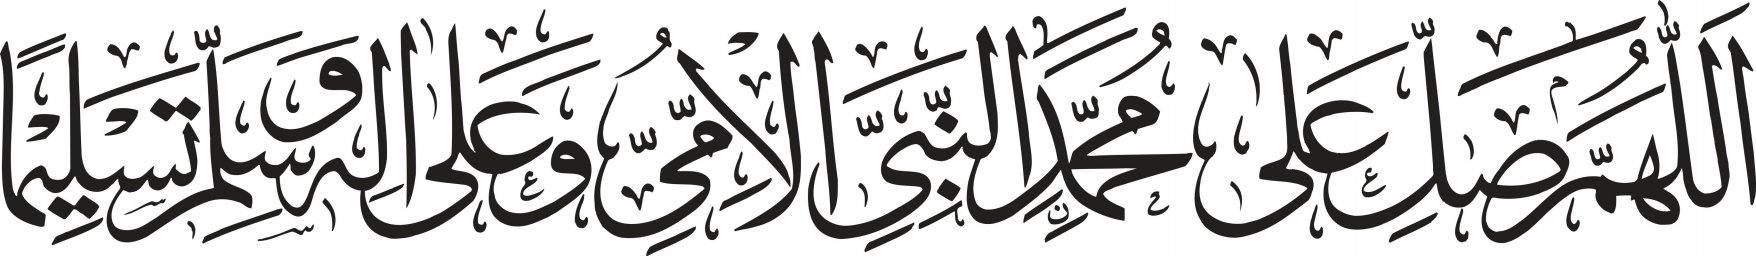 Арабская каллиграфия арабская каллиграфия аяты каллиграфия ислама субханаллах на арабском